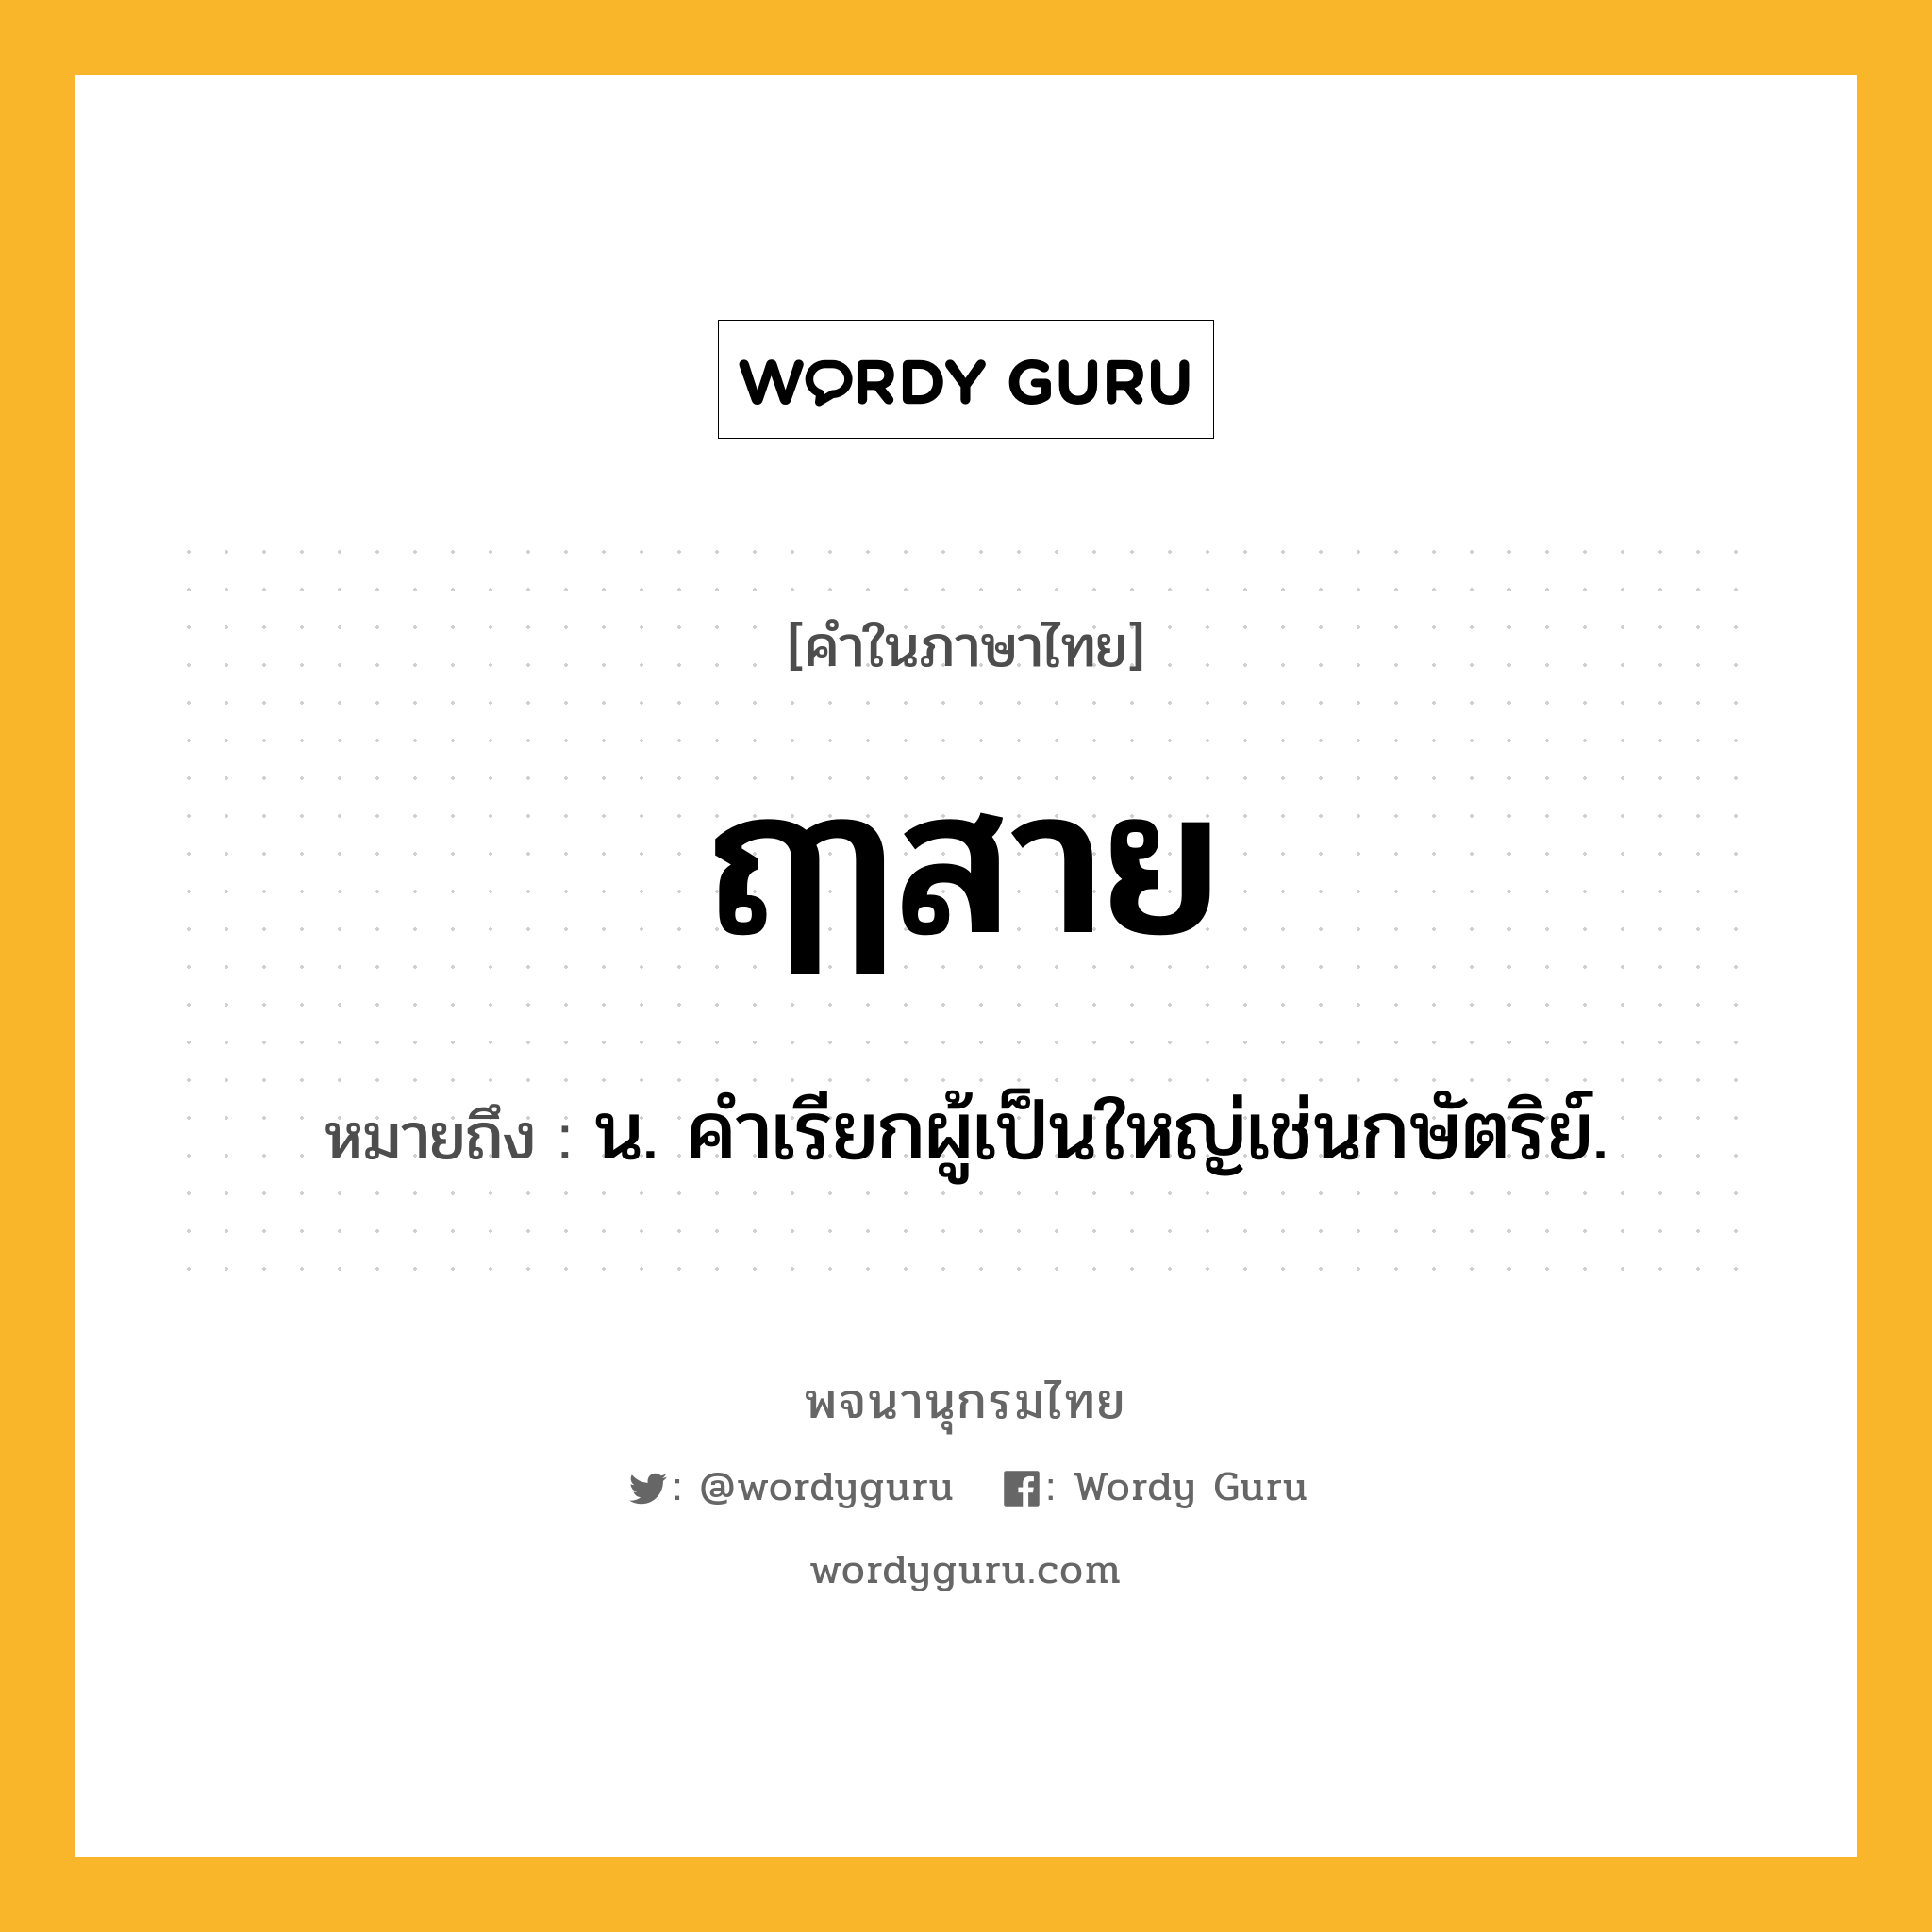 ฤๅสาย ความหมาย หมายถึงอะไร?, คำในภาษาไทย ฤๅสาย หมายถึง น. คําเรียกผู้เป็นใหญ่เช่นกษัตริย์.